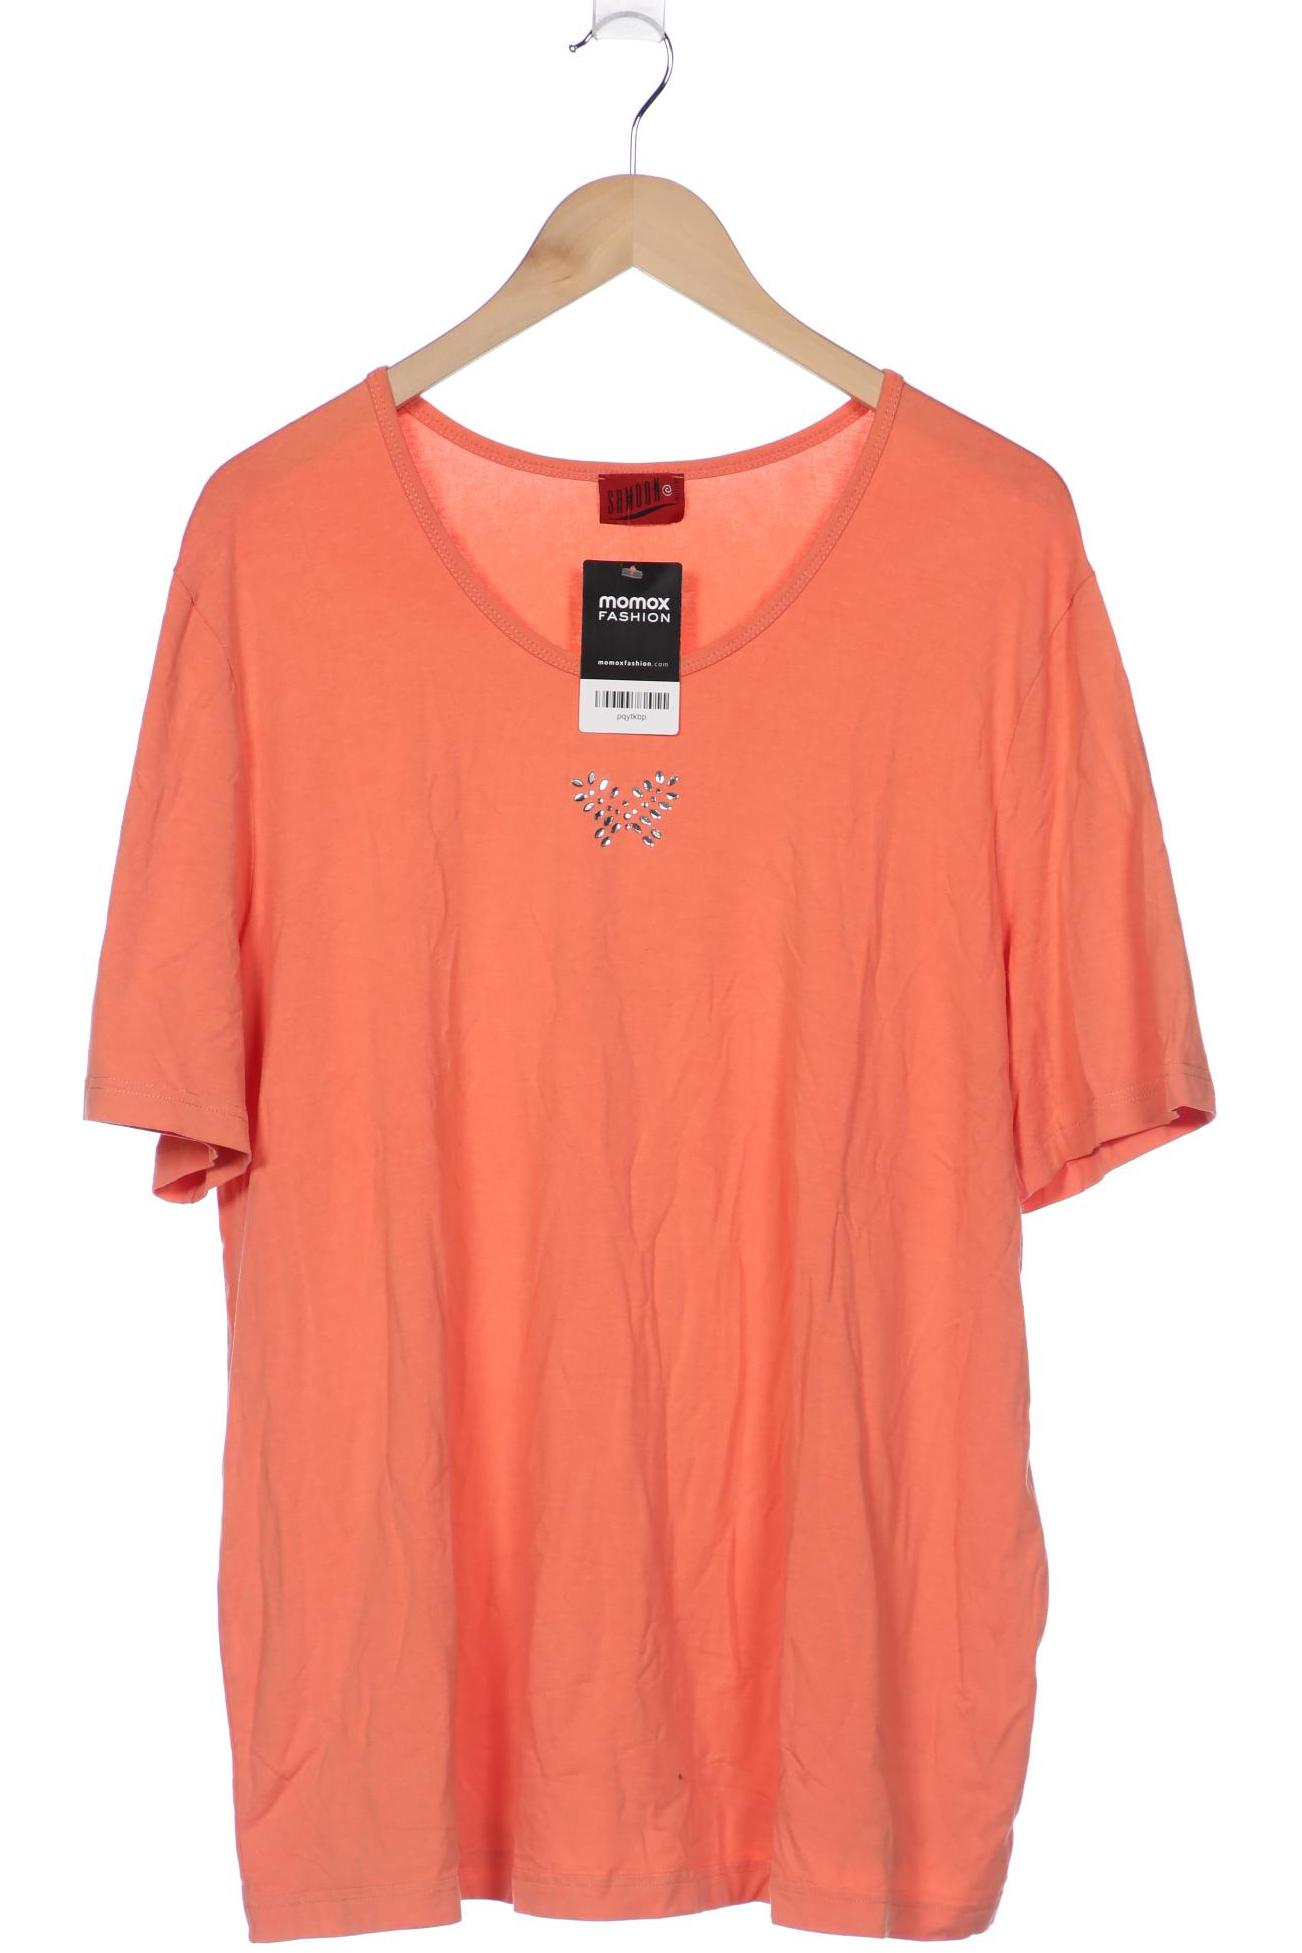 SAMOON by Gerry Weber Damen T-Shirt, orange von SAMOON by Gerry Weber